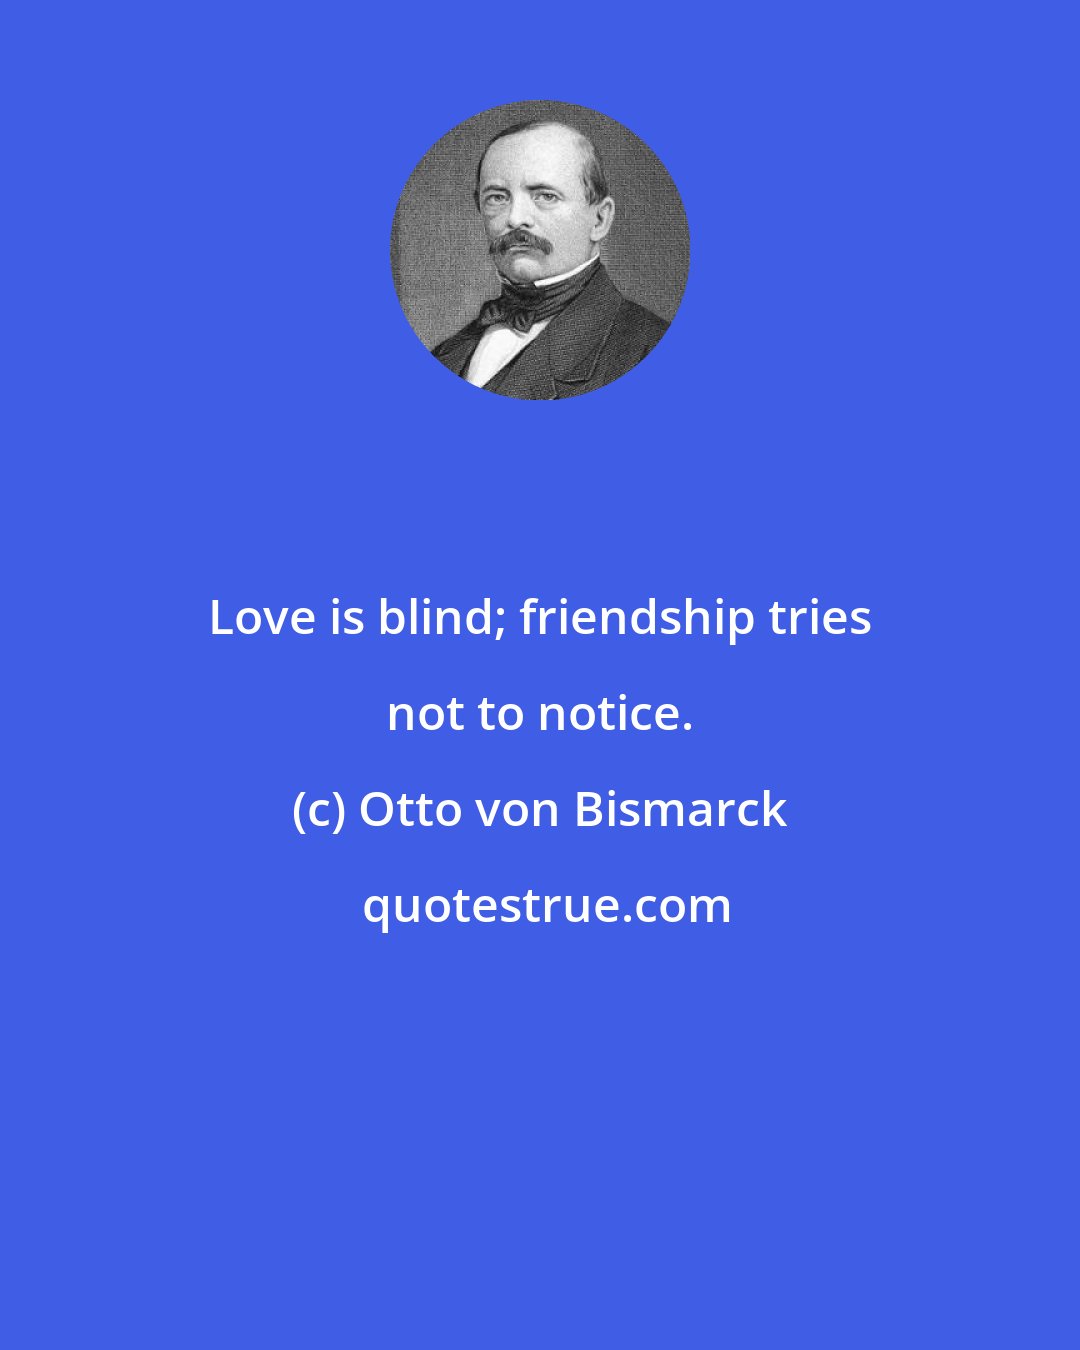 Otto von Bismarck: Love is blind; friendship tries not to notice.